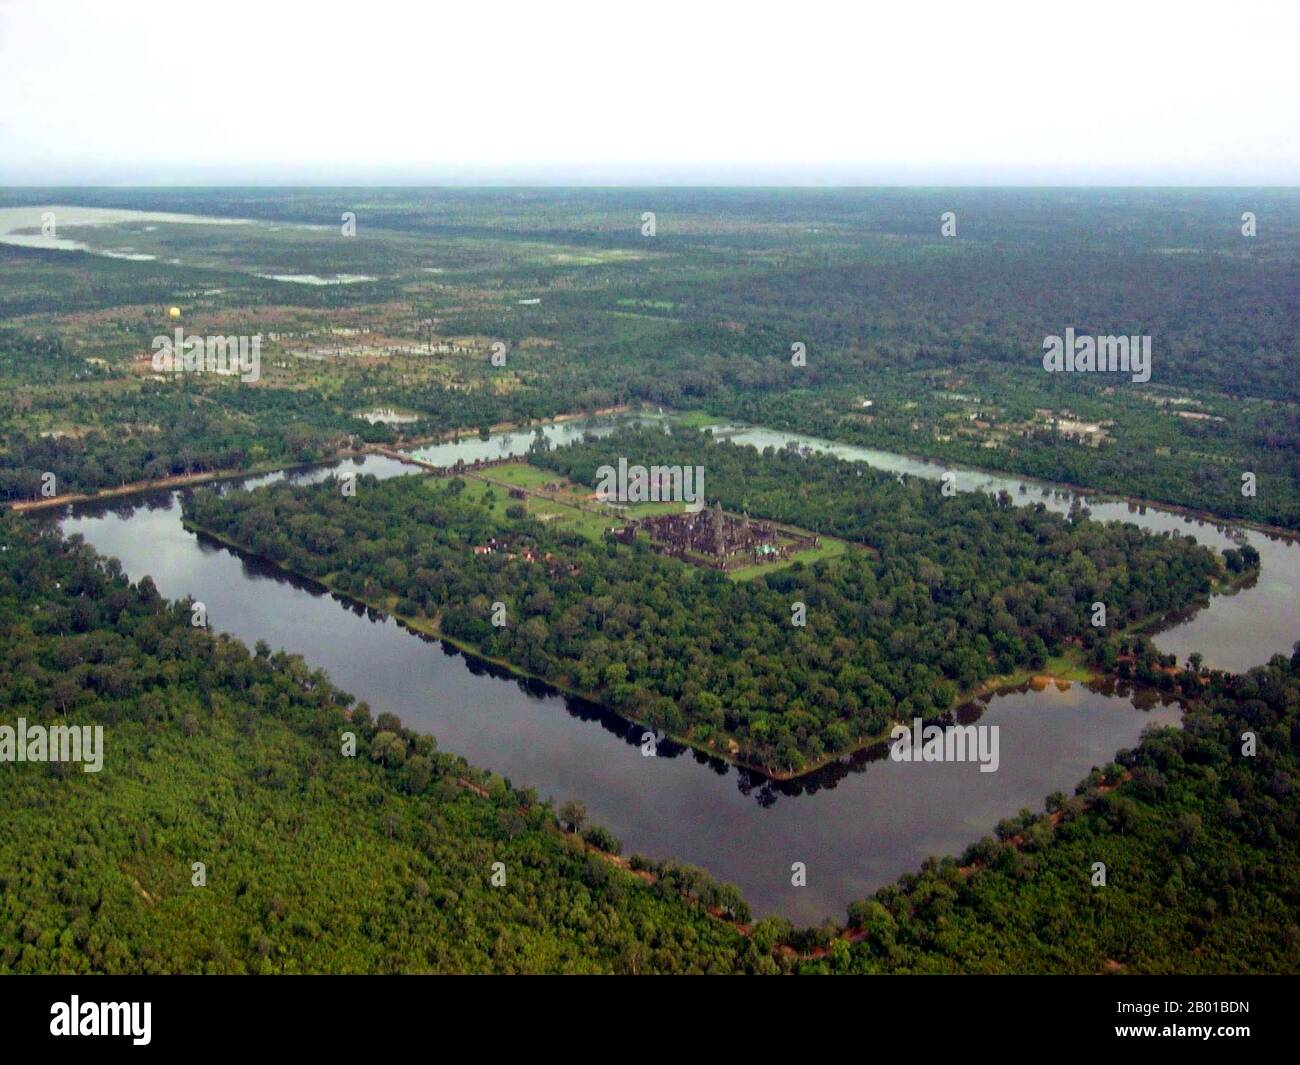 Cambogia: Angkor Wat dall'aria, compreso il fossato e la quincunx centrale o cinque torri che rappresentano il Monte Meru, la dimora indù degli dei. Foto di Charles J. Sharp (CC BY-SA 3,0 License), 2005. Angkor Wat fu costruito per il re Suryavarman II (r. 1113-1150) all'inizio del 12th ° secolo come il suo tempio di stato e capitale. Come il tempio meglio conservato del sito di Angkor, è l'unico ad essere rimasto un centro religioso significativo fin dalla sua fondazione - prima indù, dedicato al dio Vishnu, poi buddista. E' l'edificio religioso piu' grande del mondo. Foto Stock